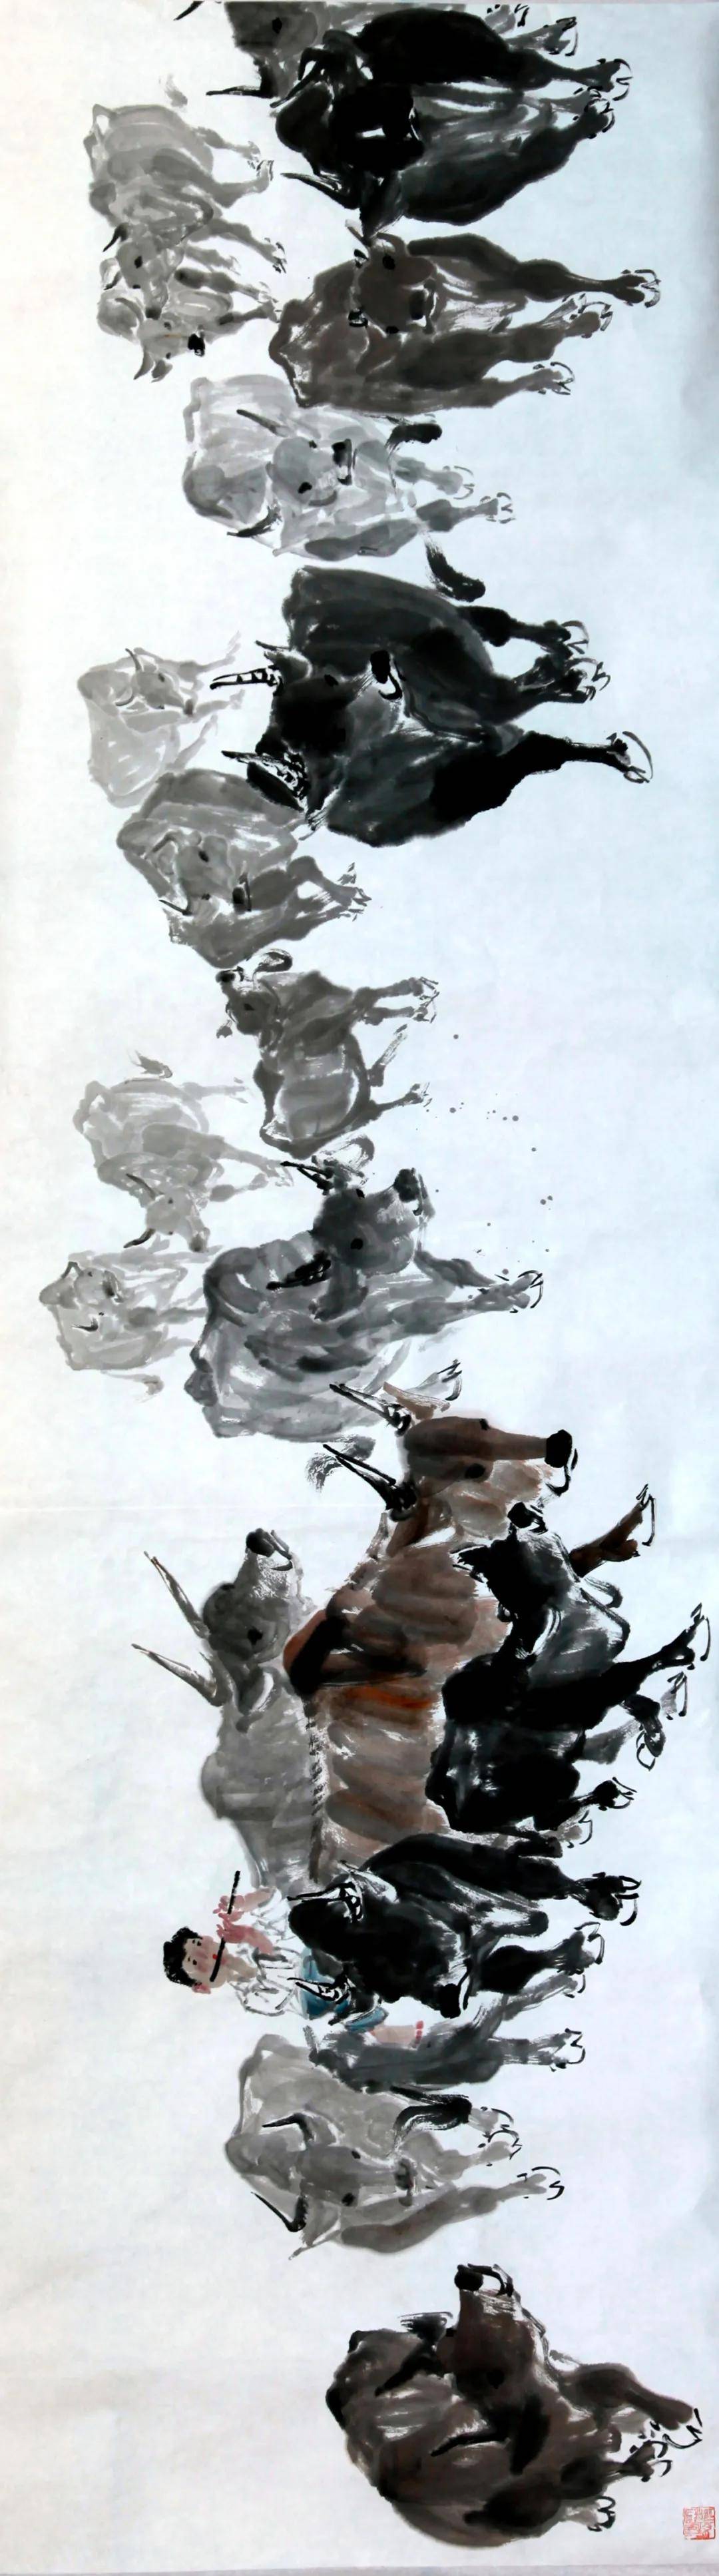 牛年话(画)牛—张丽林中国画作品《百牛图》欣赏